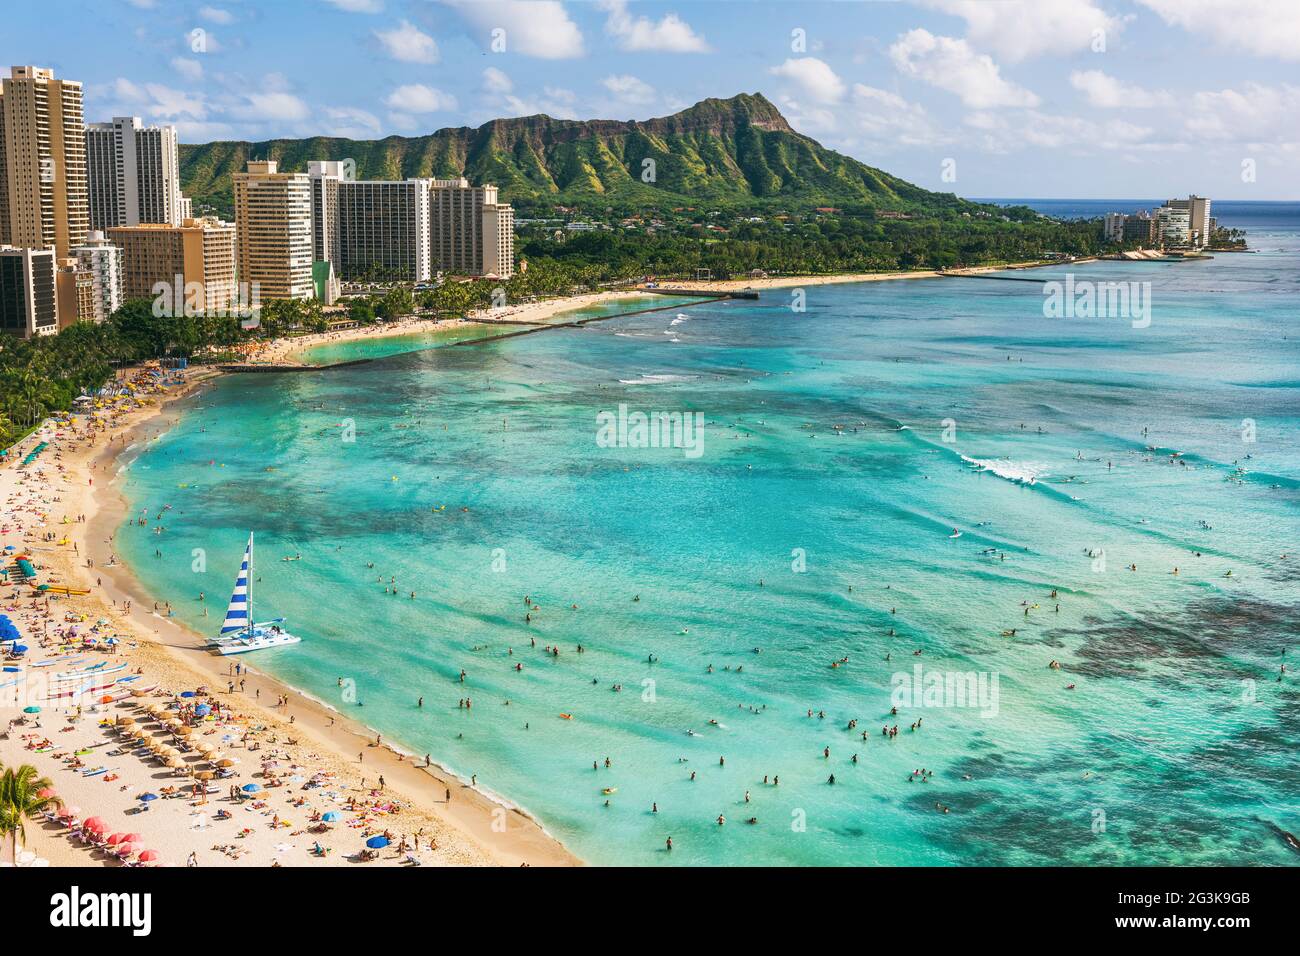 Plage d'Hawaï ville d'Honolulu Voyage paysage de la plage de Waikiki et le pic de la montagne de Diamond Head au coucher du soleil, île d'Oahu, États-Unis vacances. Banque D'Images